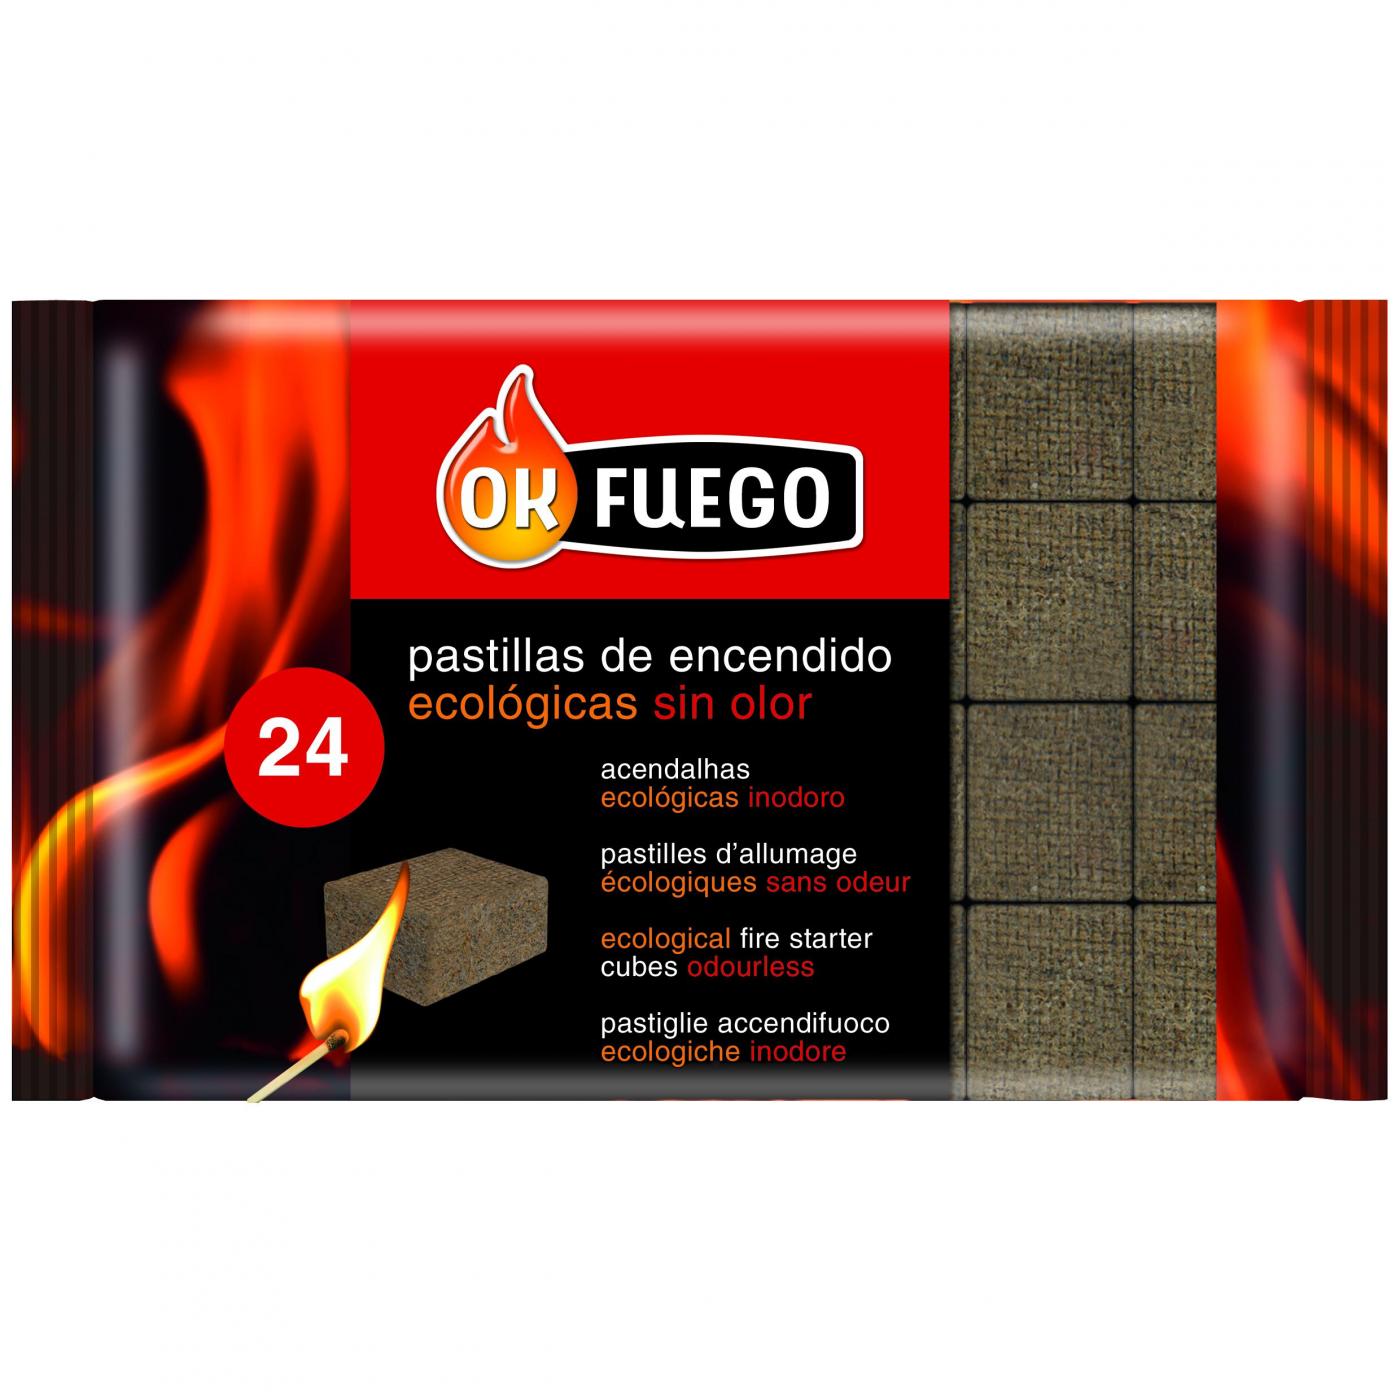 Caja de 32 Pastillas de Encendido Fuego para chimeneas, Estufas, barbacoas